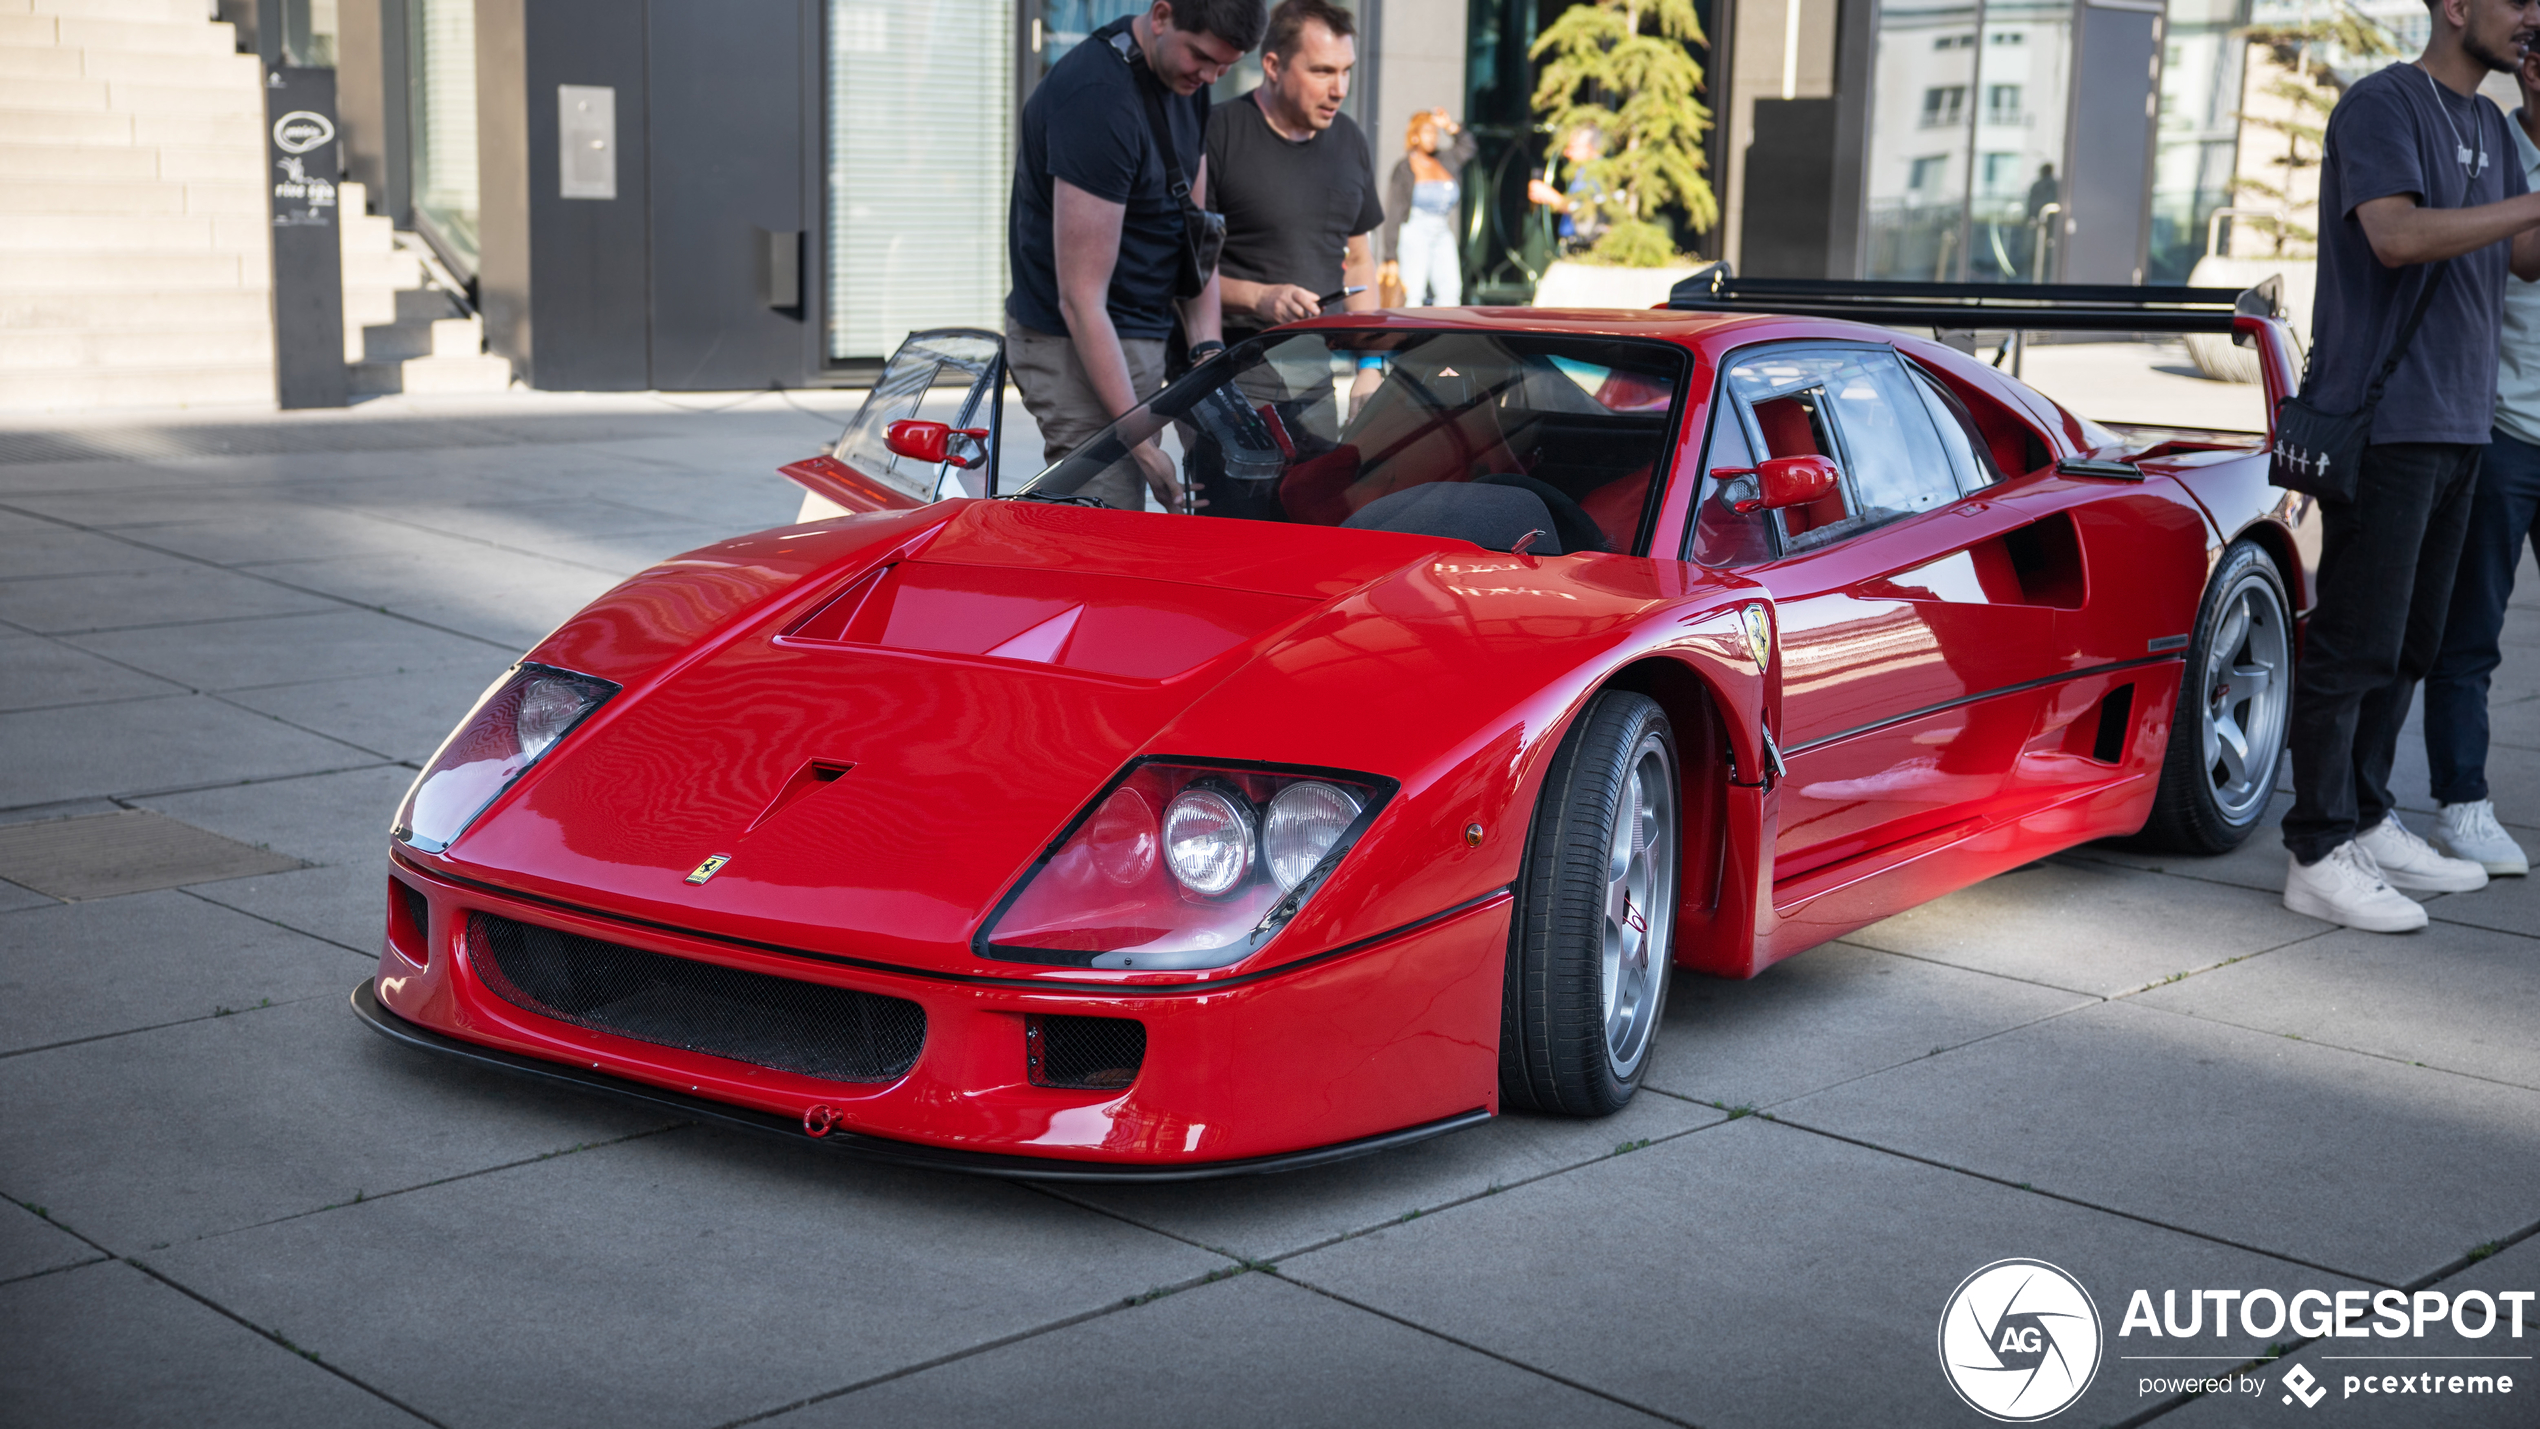 Michelotto maakte de Ferrari F40 nog net wat bijzonderder